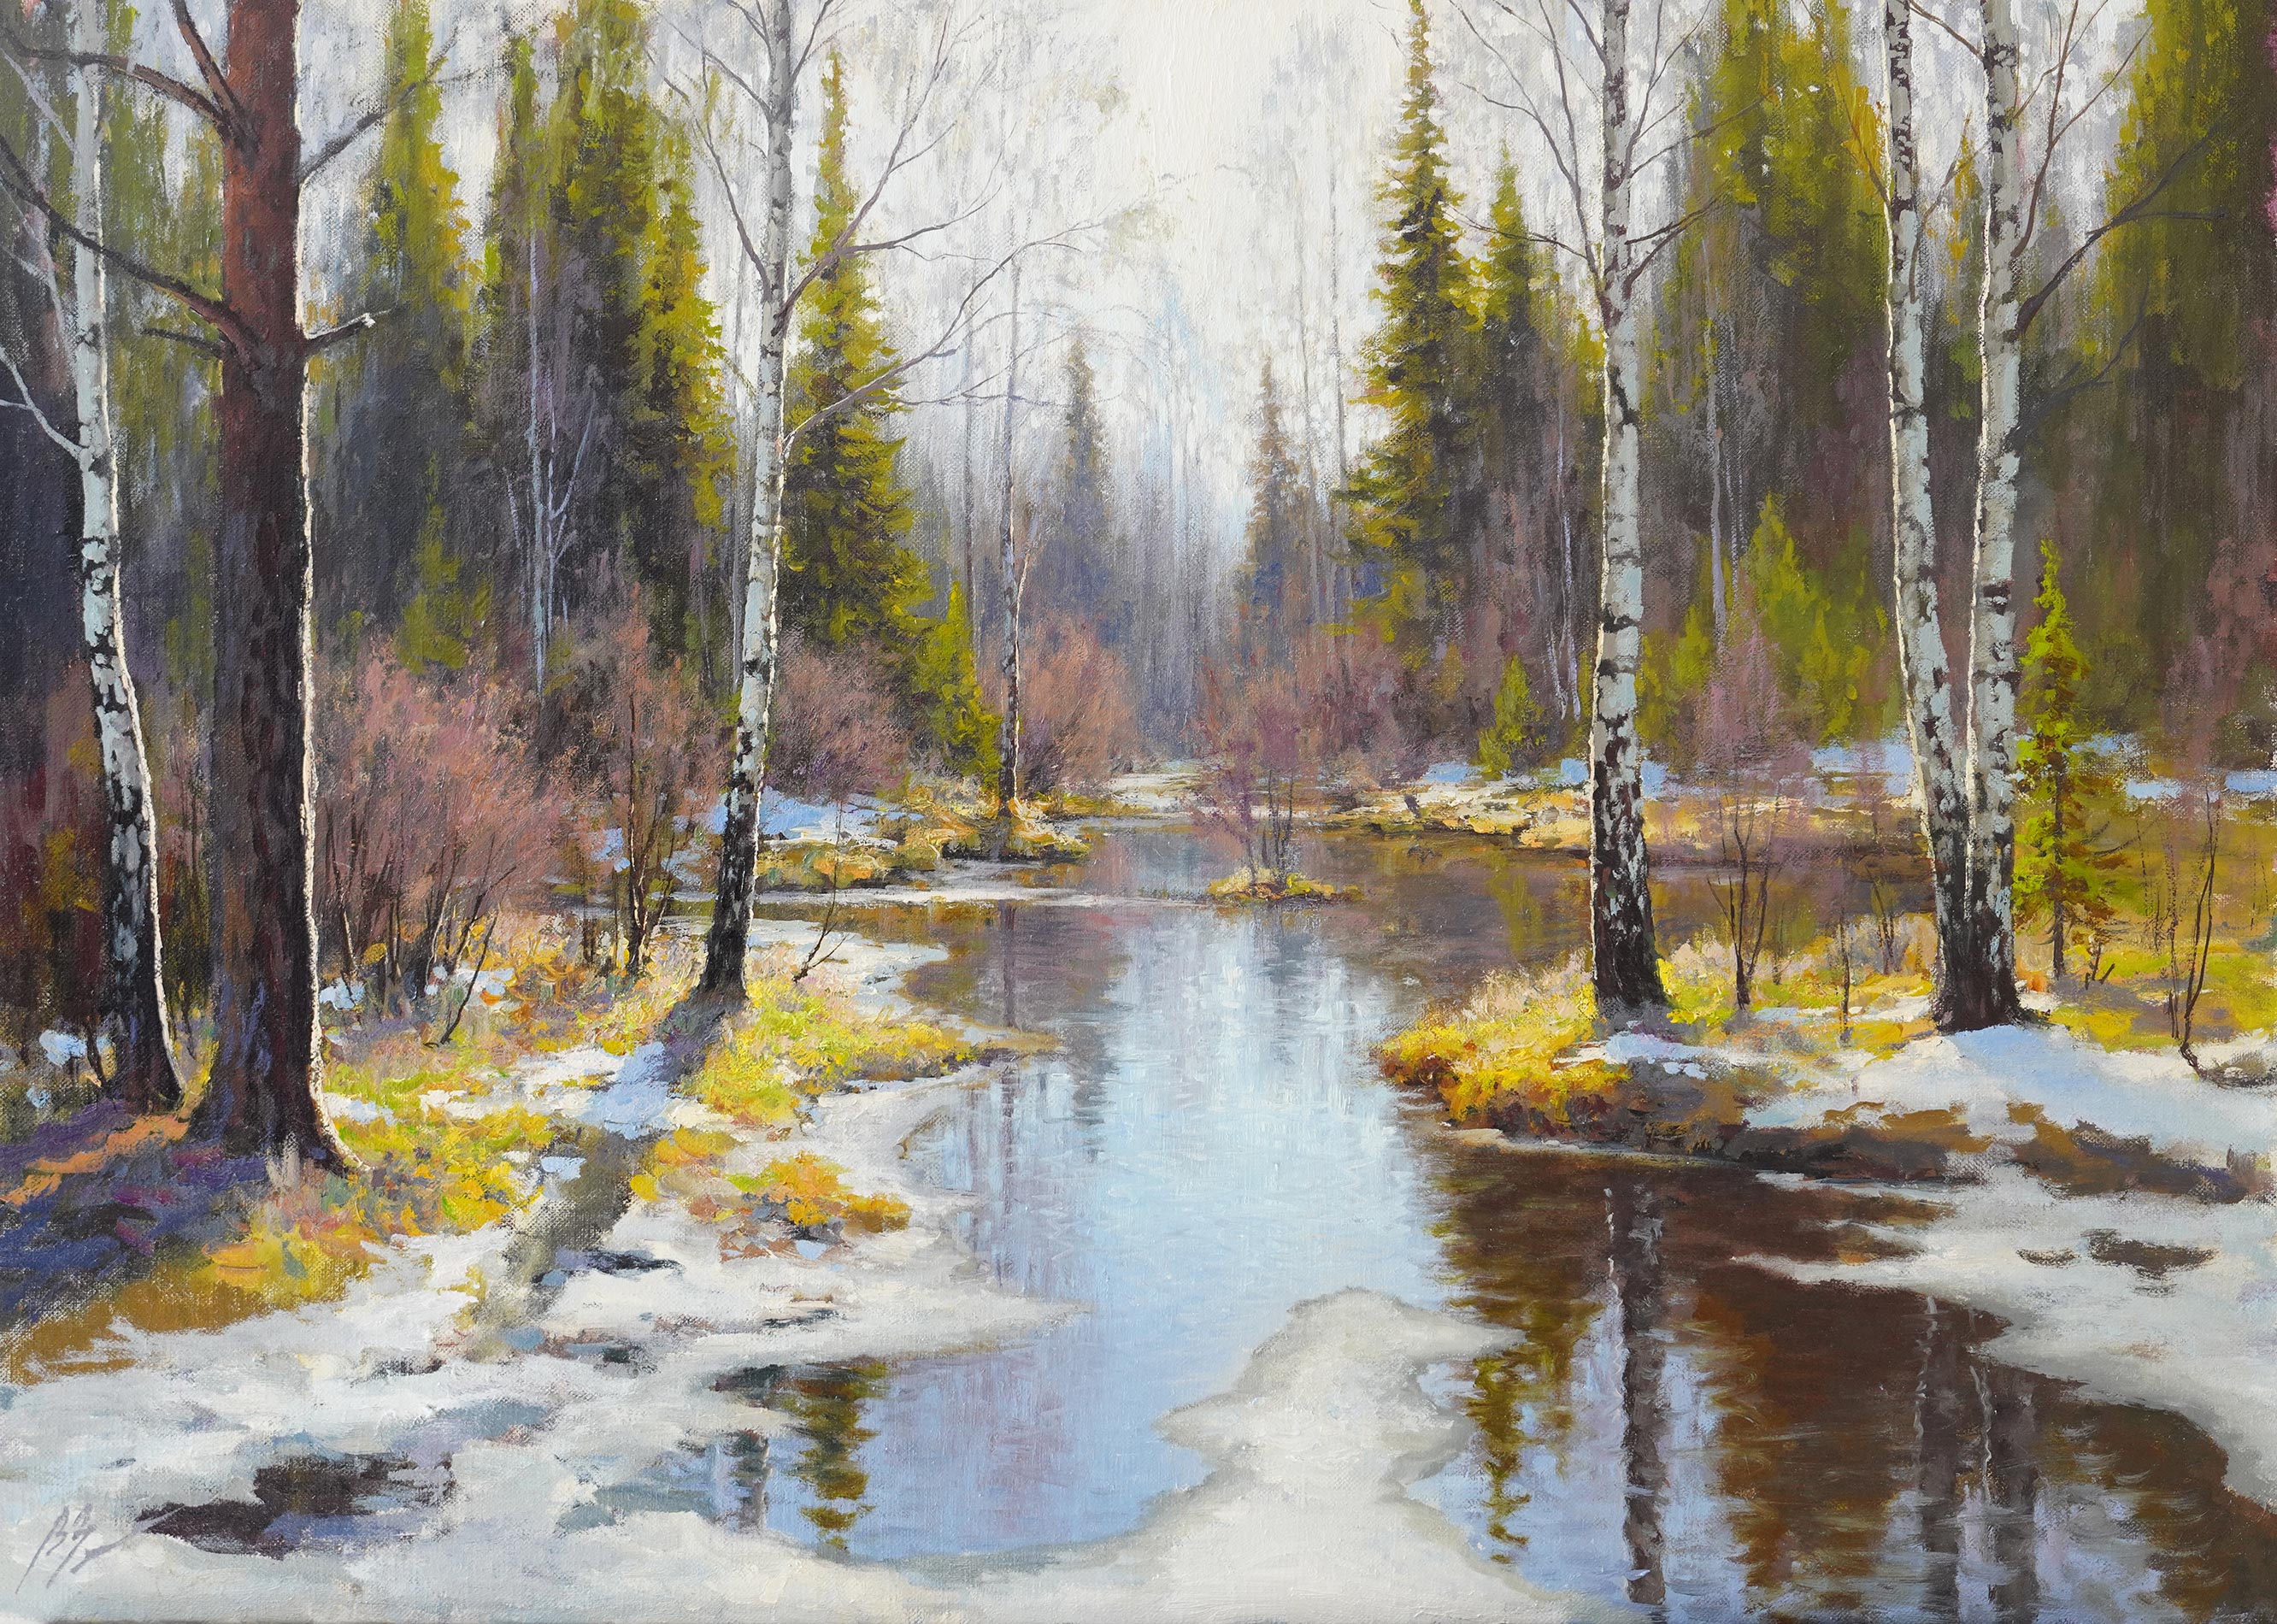 Flood - 1, Vadim Zainullin, Buy the painting Oil